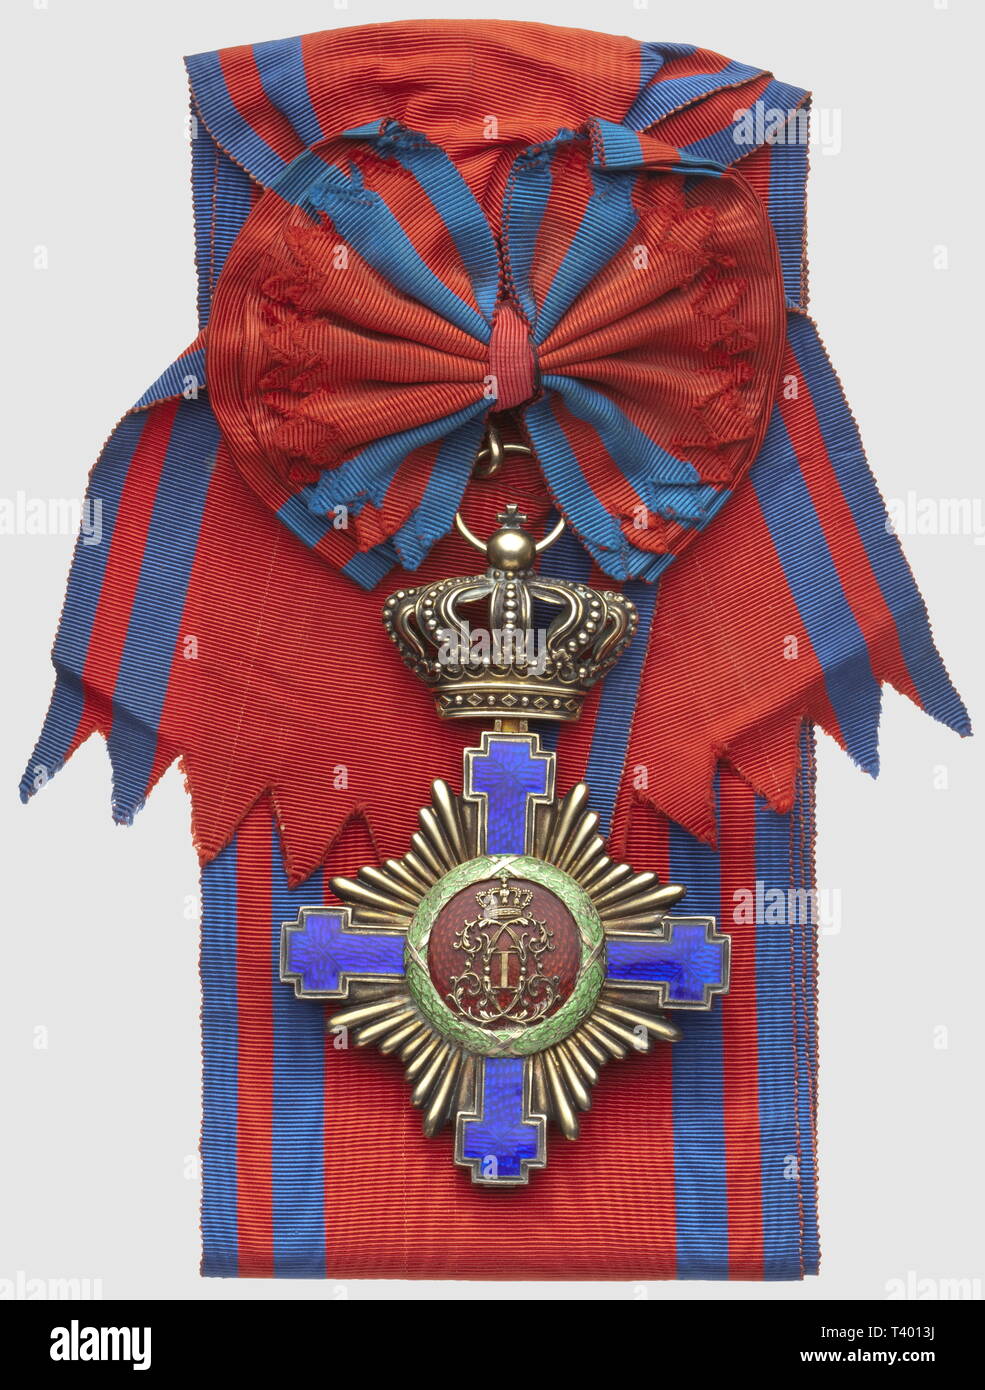 Ordre de l'Etoile, bijou de grand croix à titre civil, avant 1932, avec poincon du producteur 'Resch' et avec son écharpe, dimensions 115 x 78mm. Créé par le roi Carol Ier en 1877, modifié en 1932, Additional-Rights-Clearance-Info-Not-Available Stock Photo